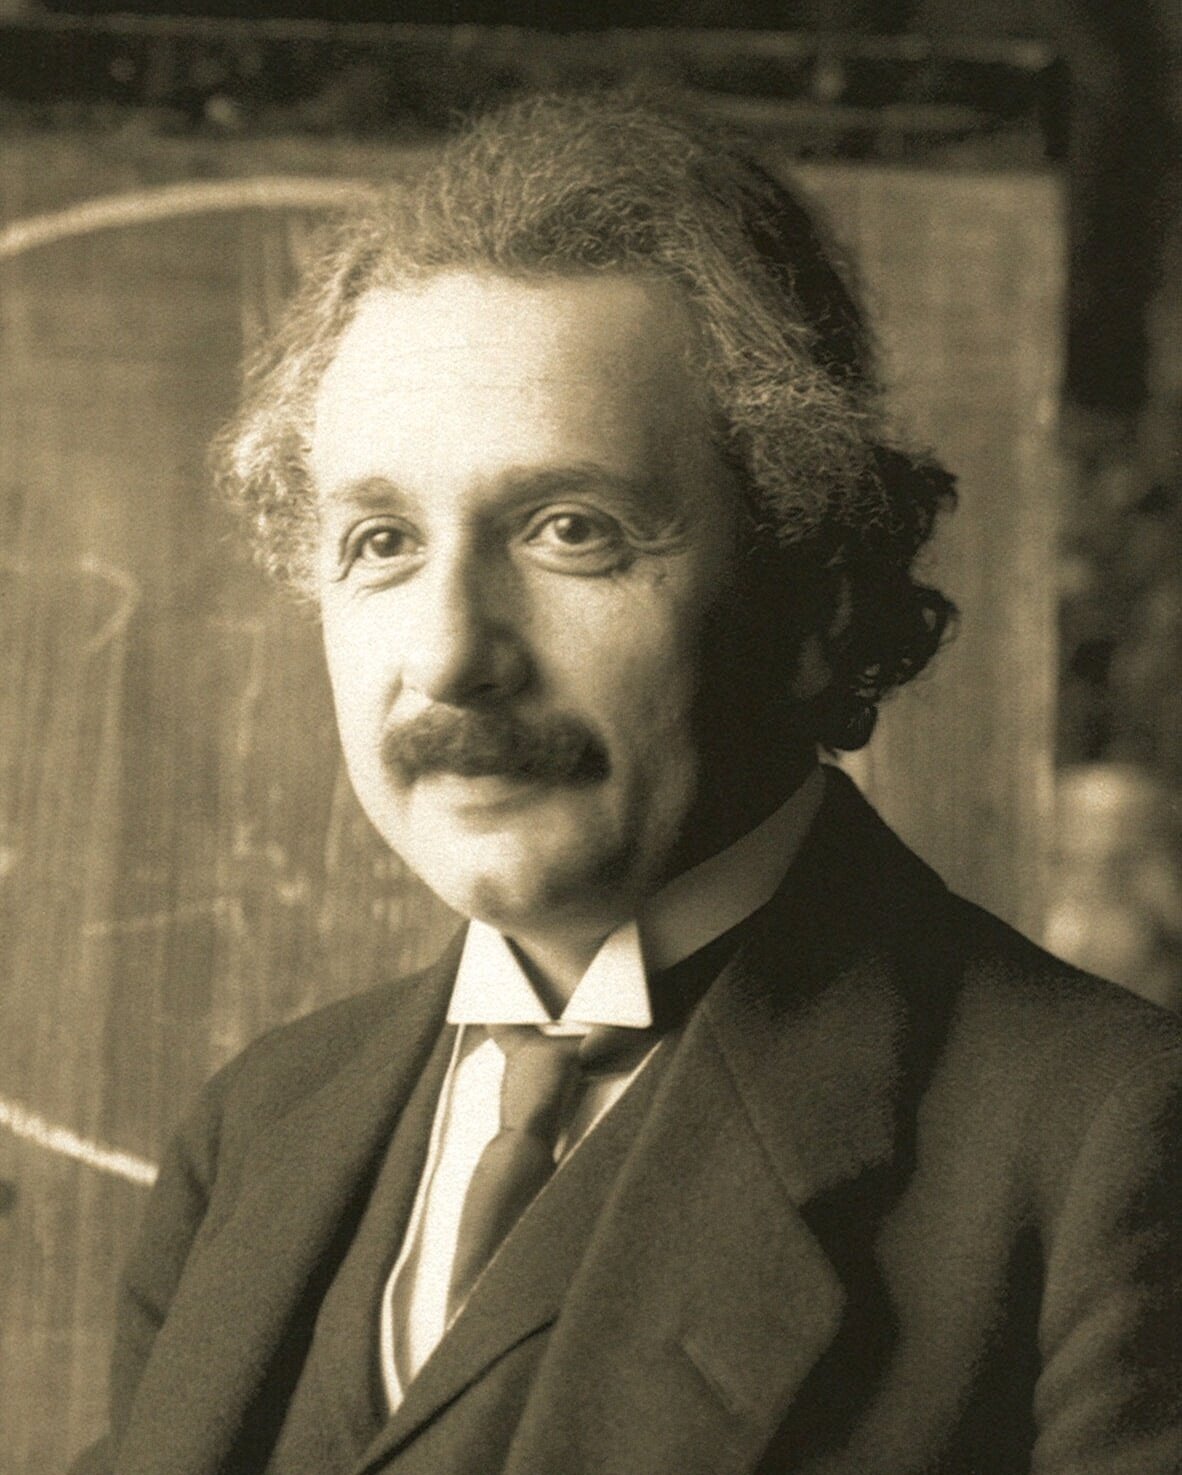 Albert Einstein urodził się w 1879 roku w Niemczech, niemniej jego kariera naukowa związana była ze Szwajcarią, a w latach 30. XX wieku z USA Źródło: Ferdinand Schmutzer, Albert Einstein urodził się w 1879 roku w Niemczech, niemniej jego kariera naukowa związana była ze Szwajcarią, a w latach 30. XX wieku z USA , domena publiczna.